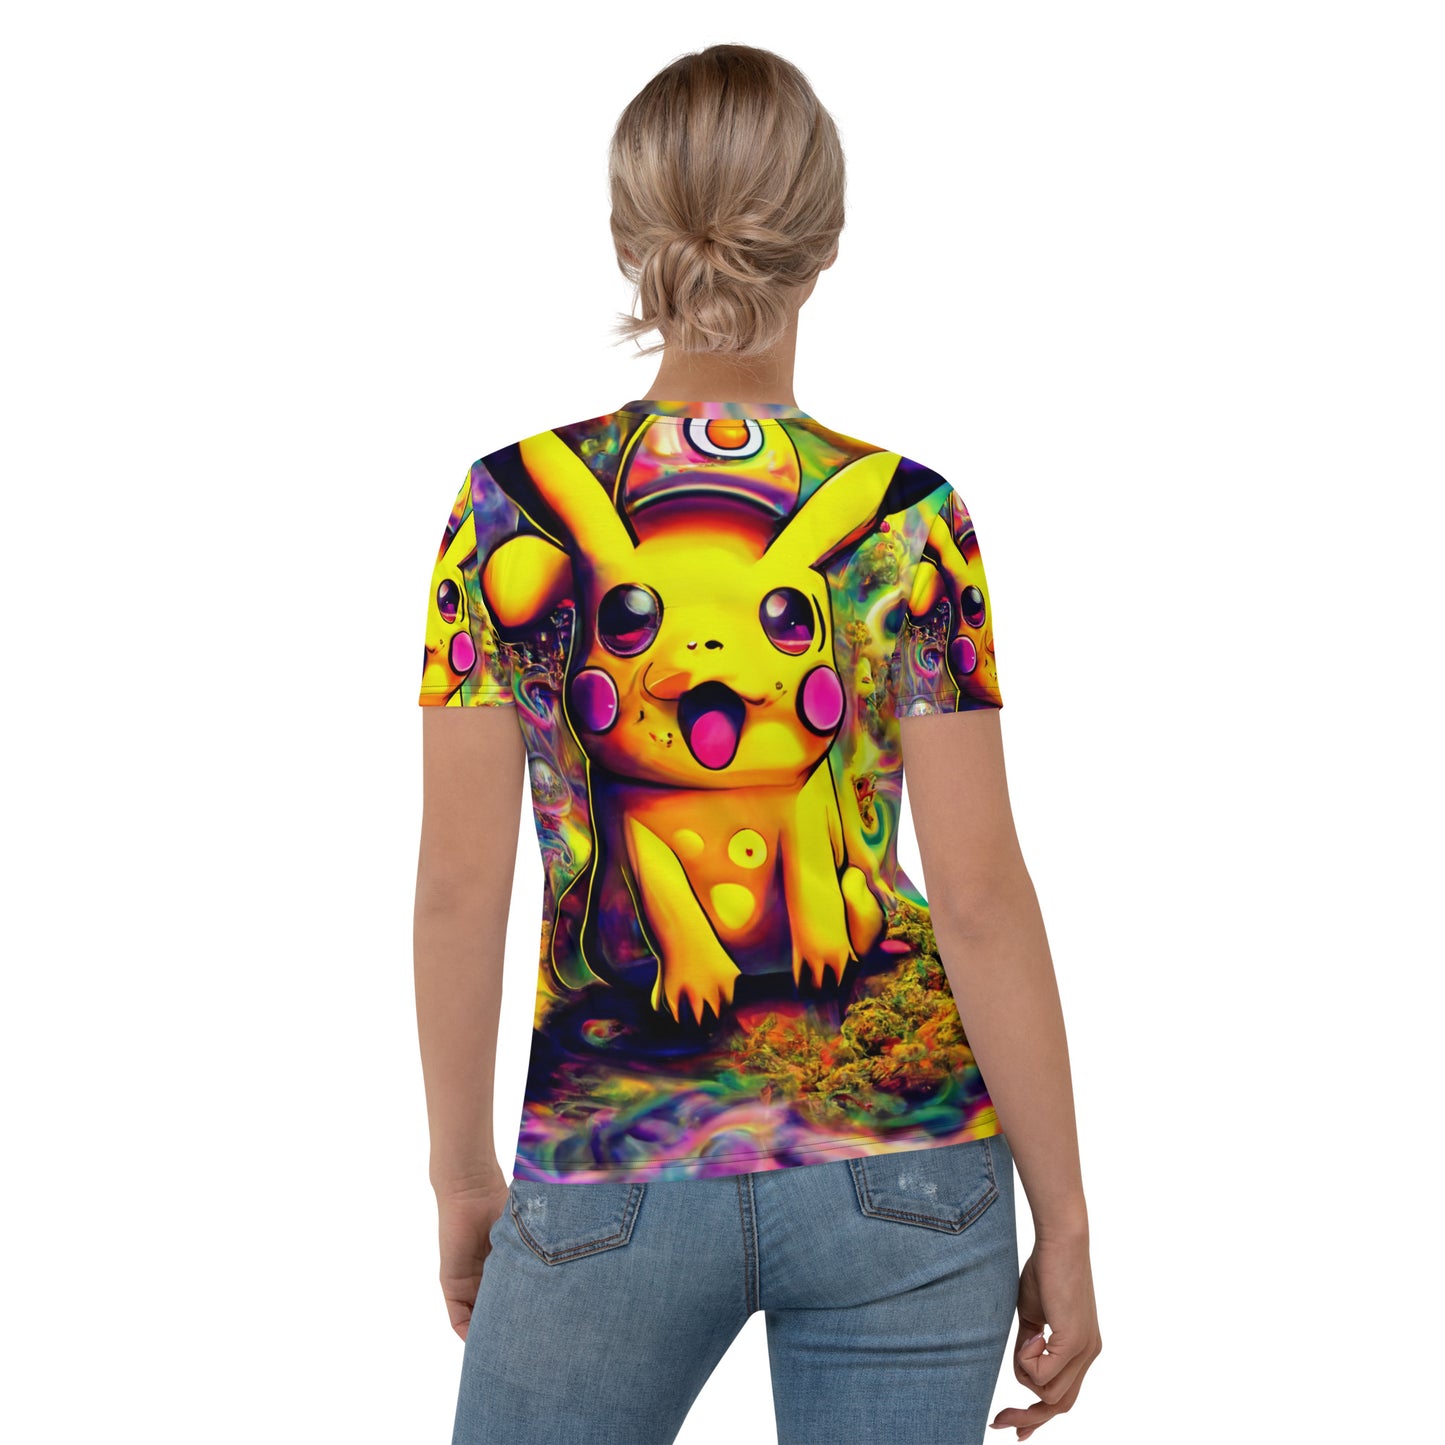 Pikachu Trip 1.0 Women's T-shirt